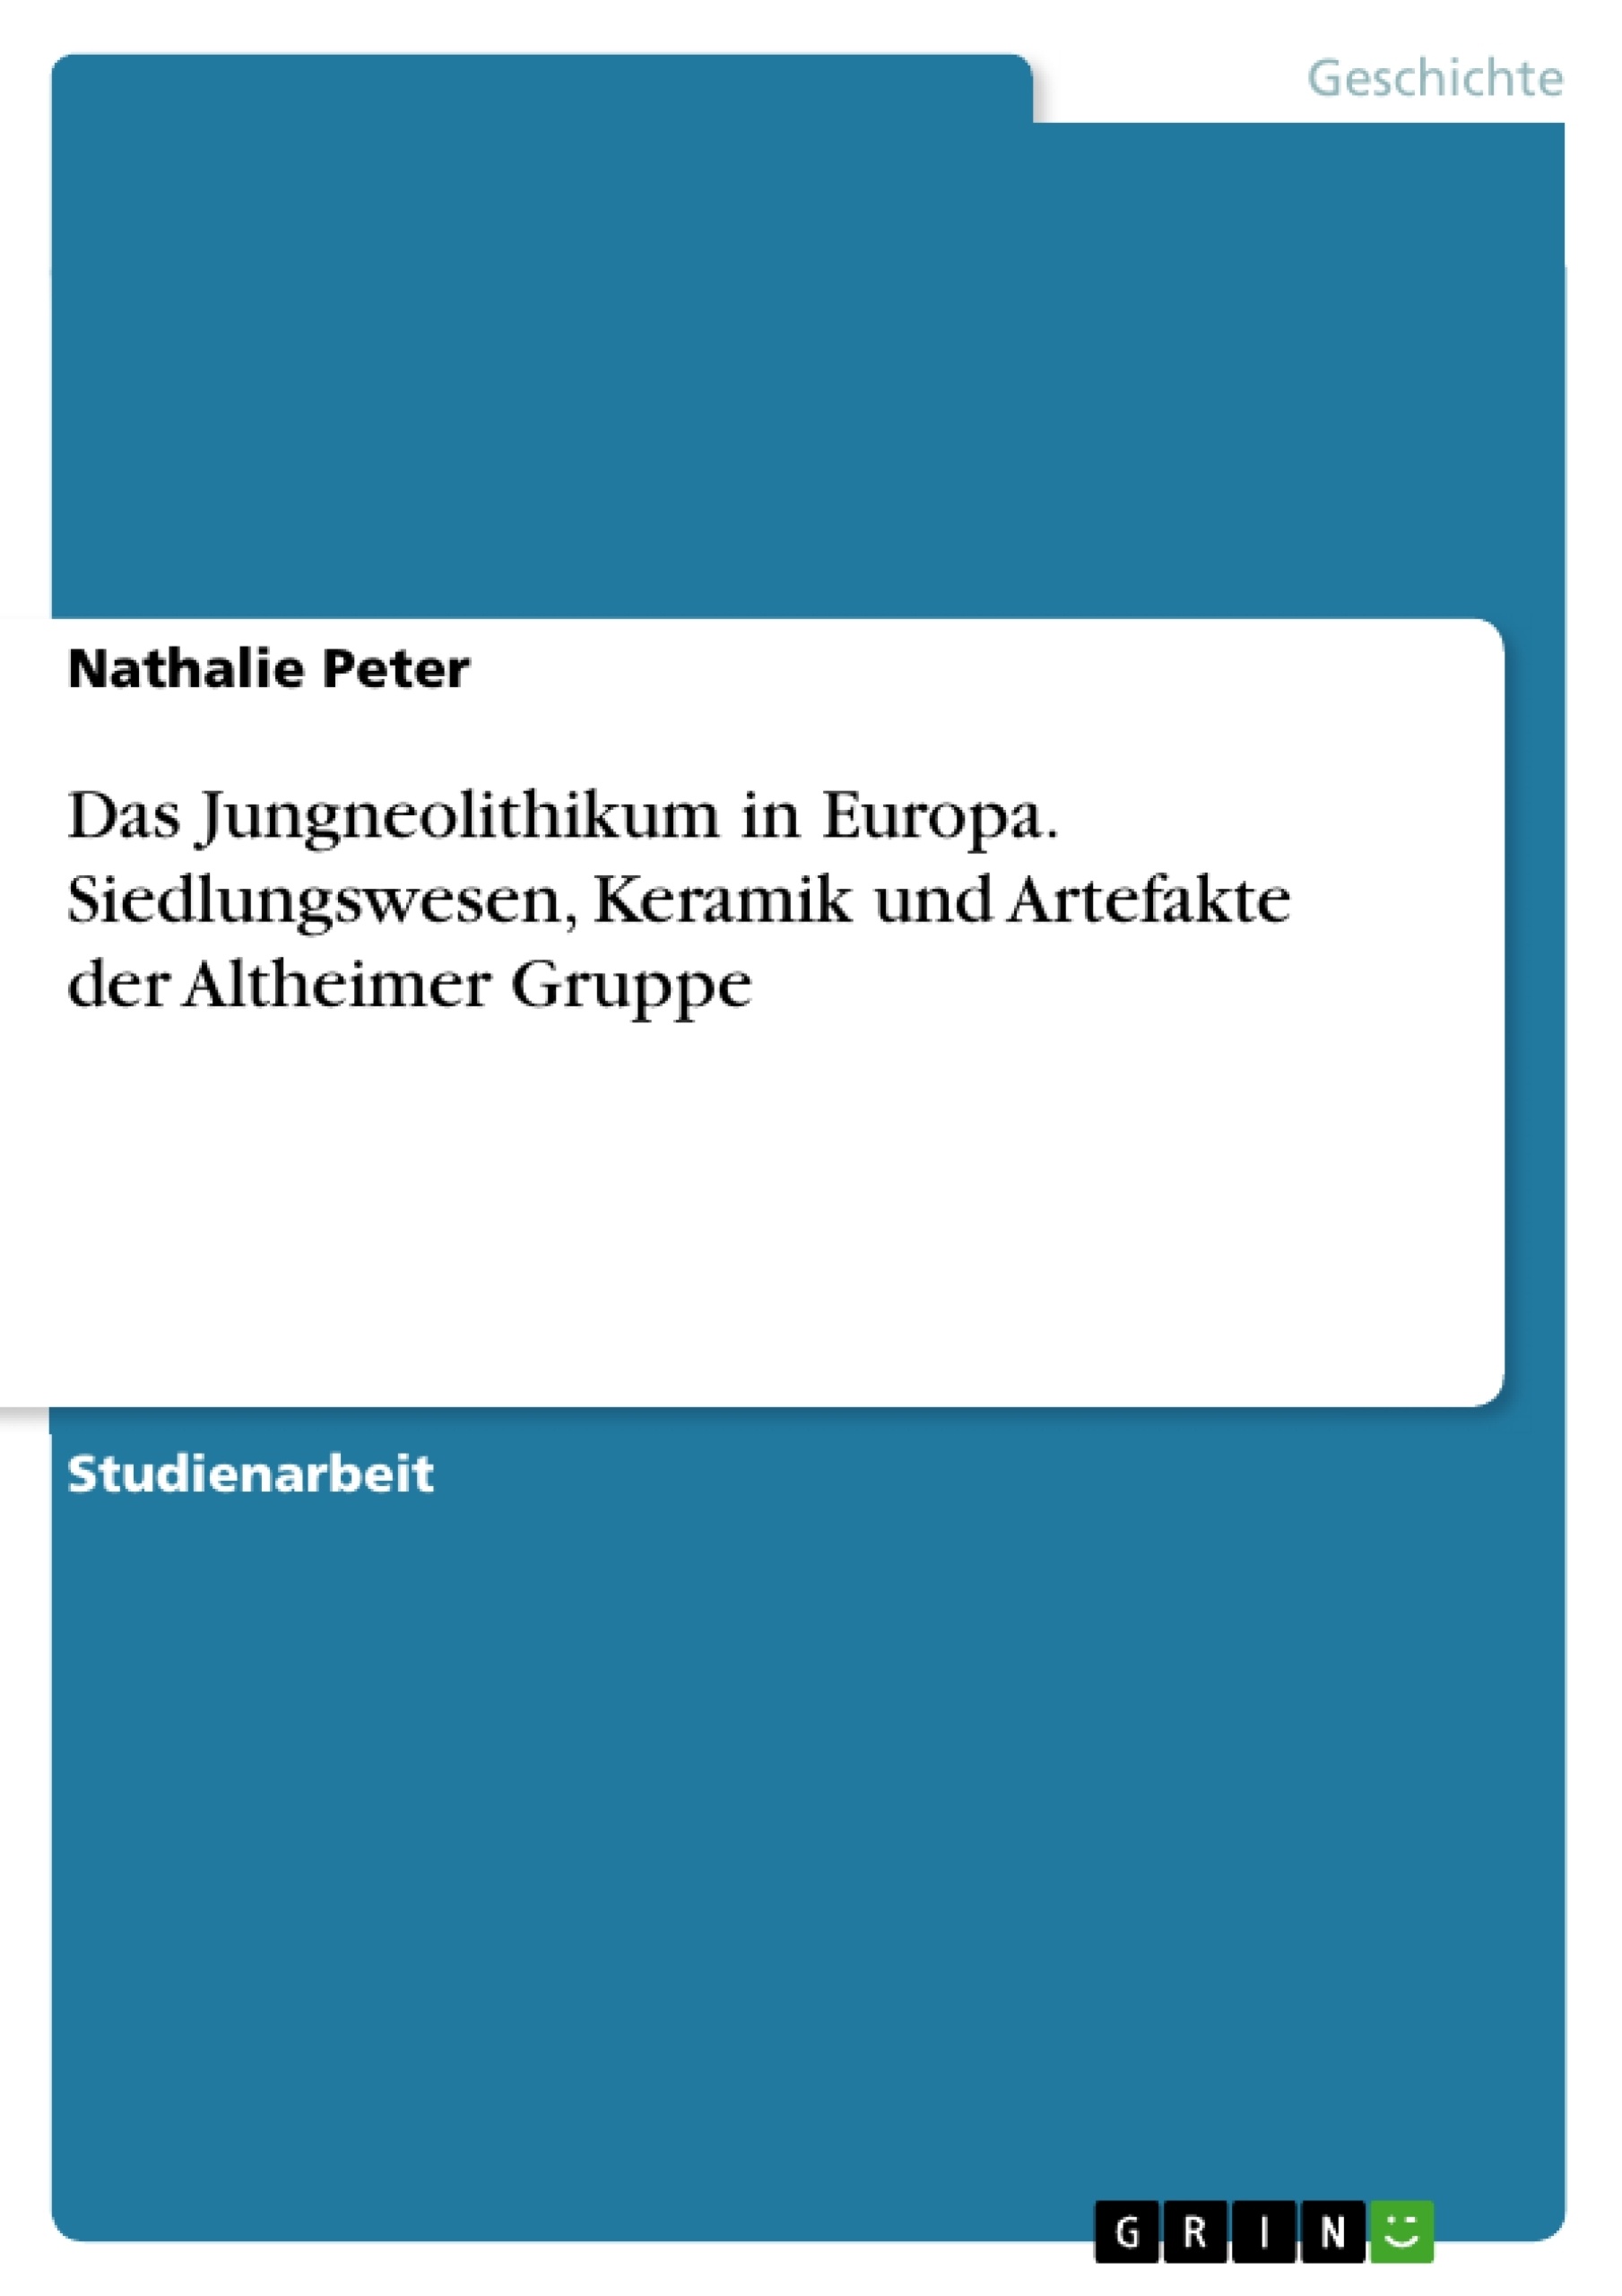 Título: Das Jungneolithikum in Europa. Siedlungswesen, Keramik und Artefakte der Altheimer Gruppe